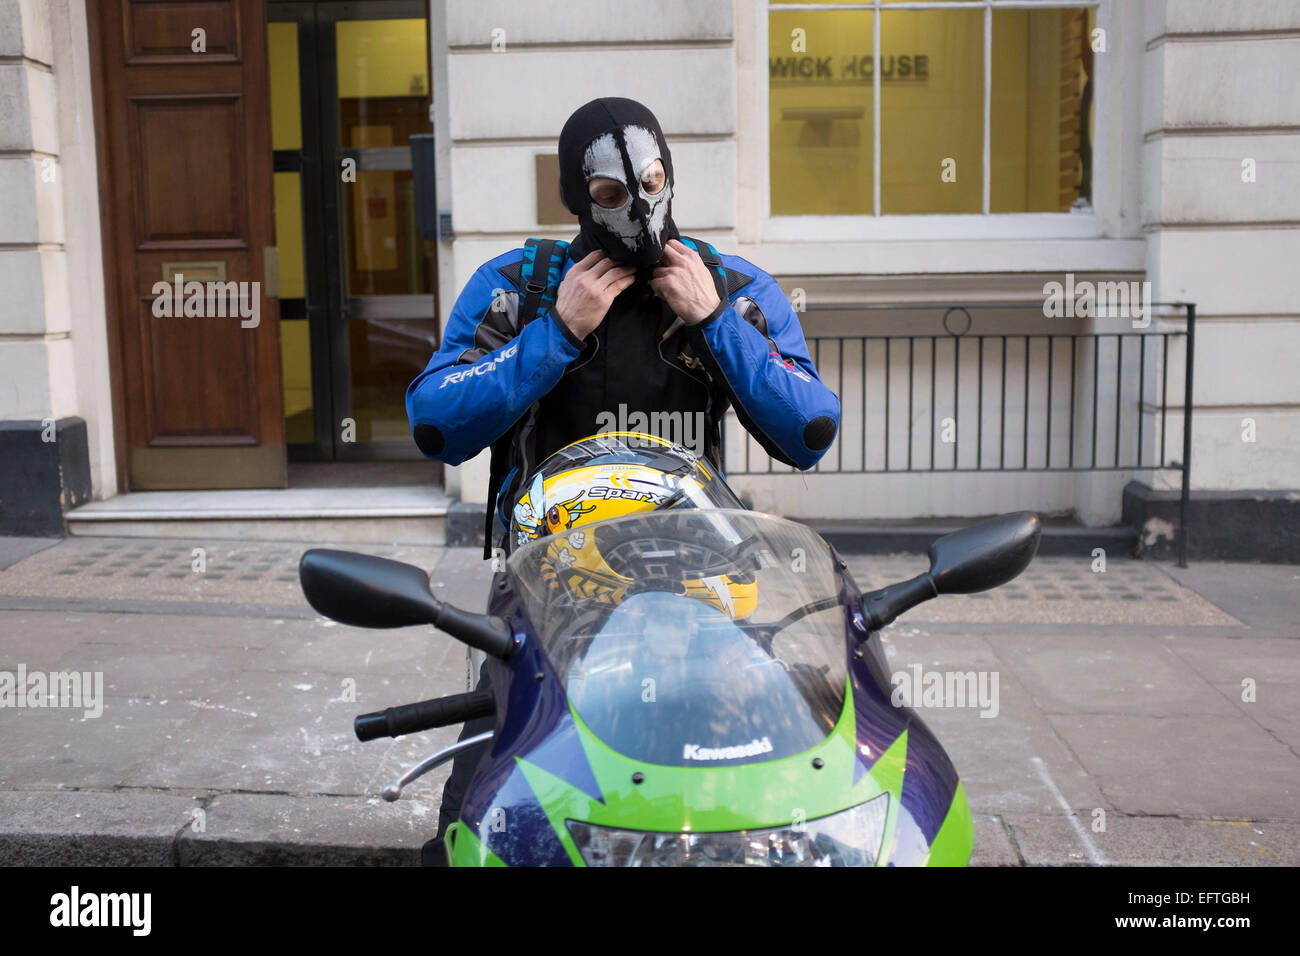 Motociclista indossando un teschio passamontagna che lo fa sembrare  minaccioso. Londra, Regno Unito Foto stock - Alamy